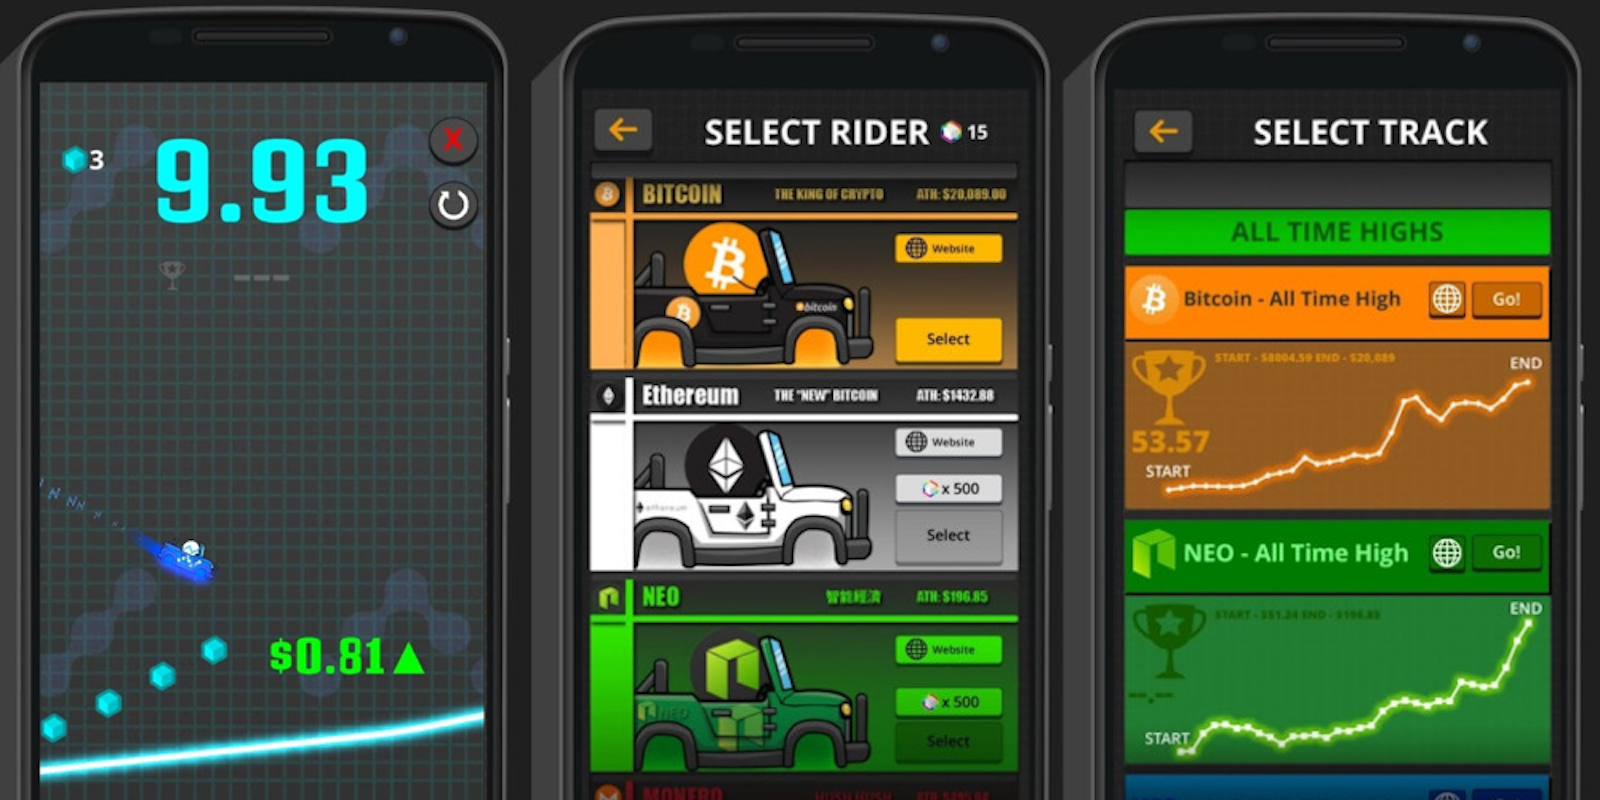 Crypto Rider screen shots